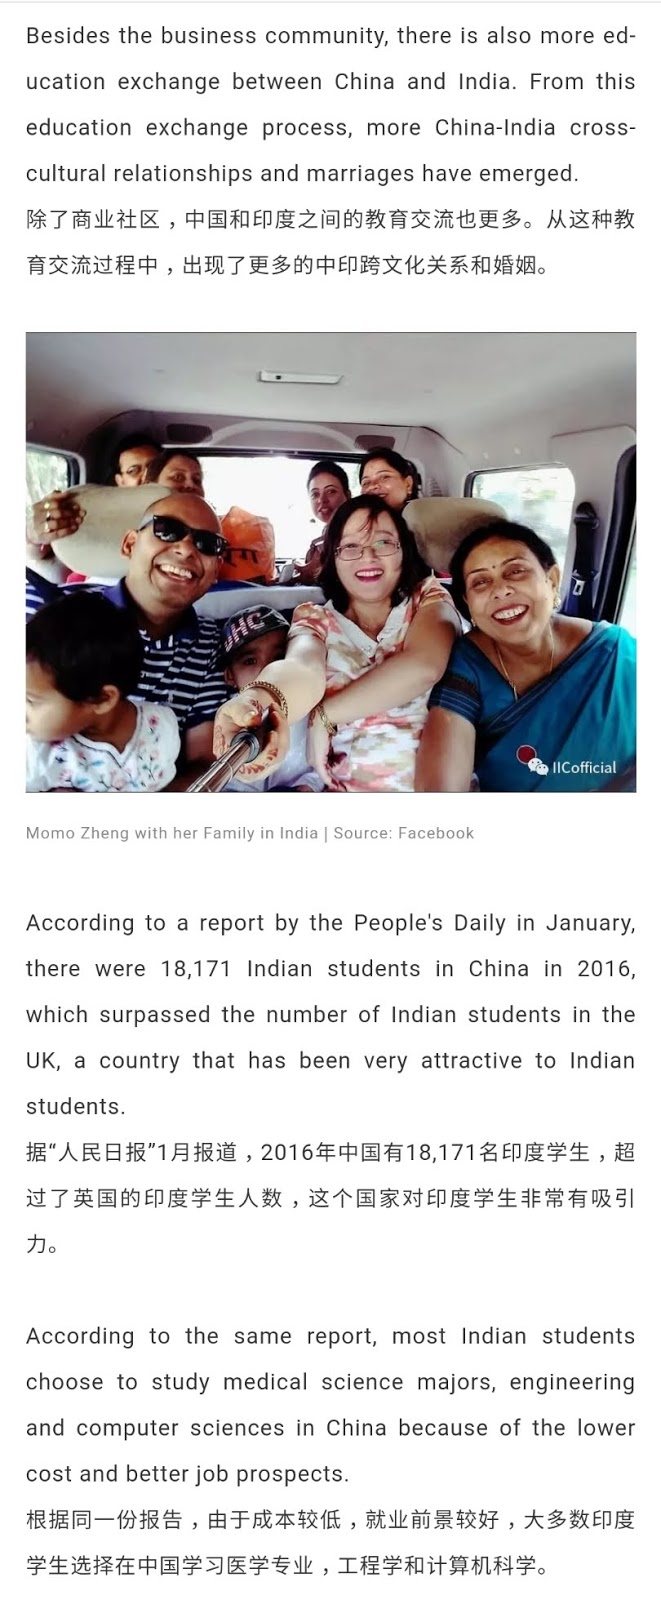 IICofficial专题:嫁给印度人之来自中国的印度媳